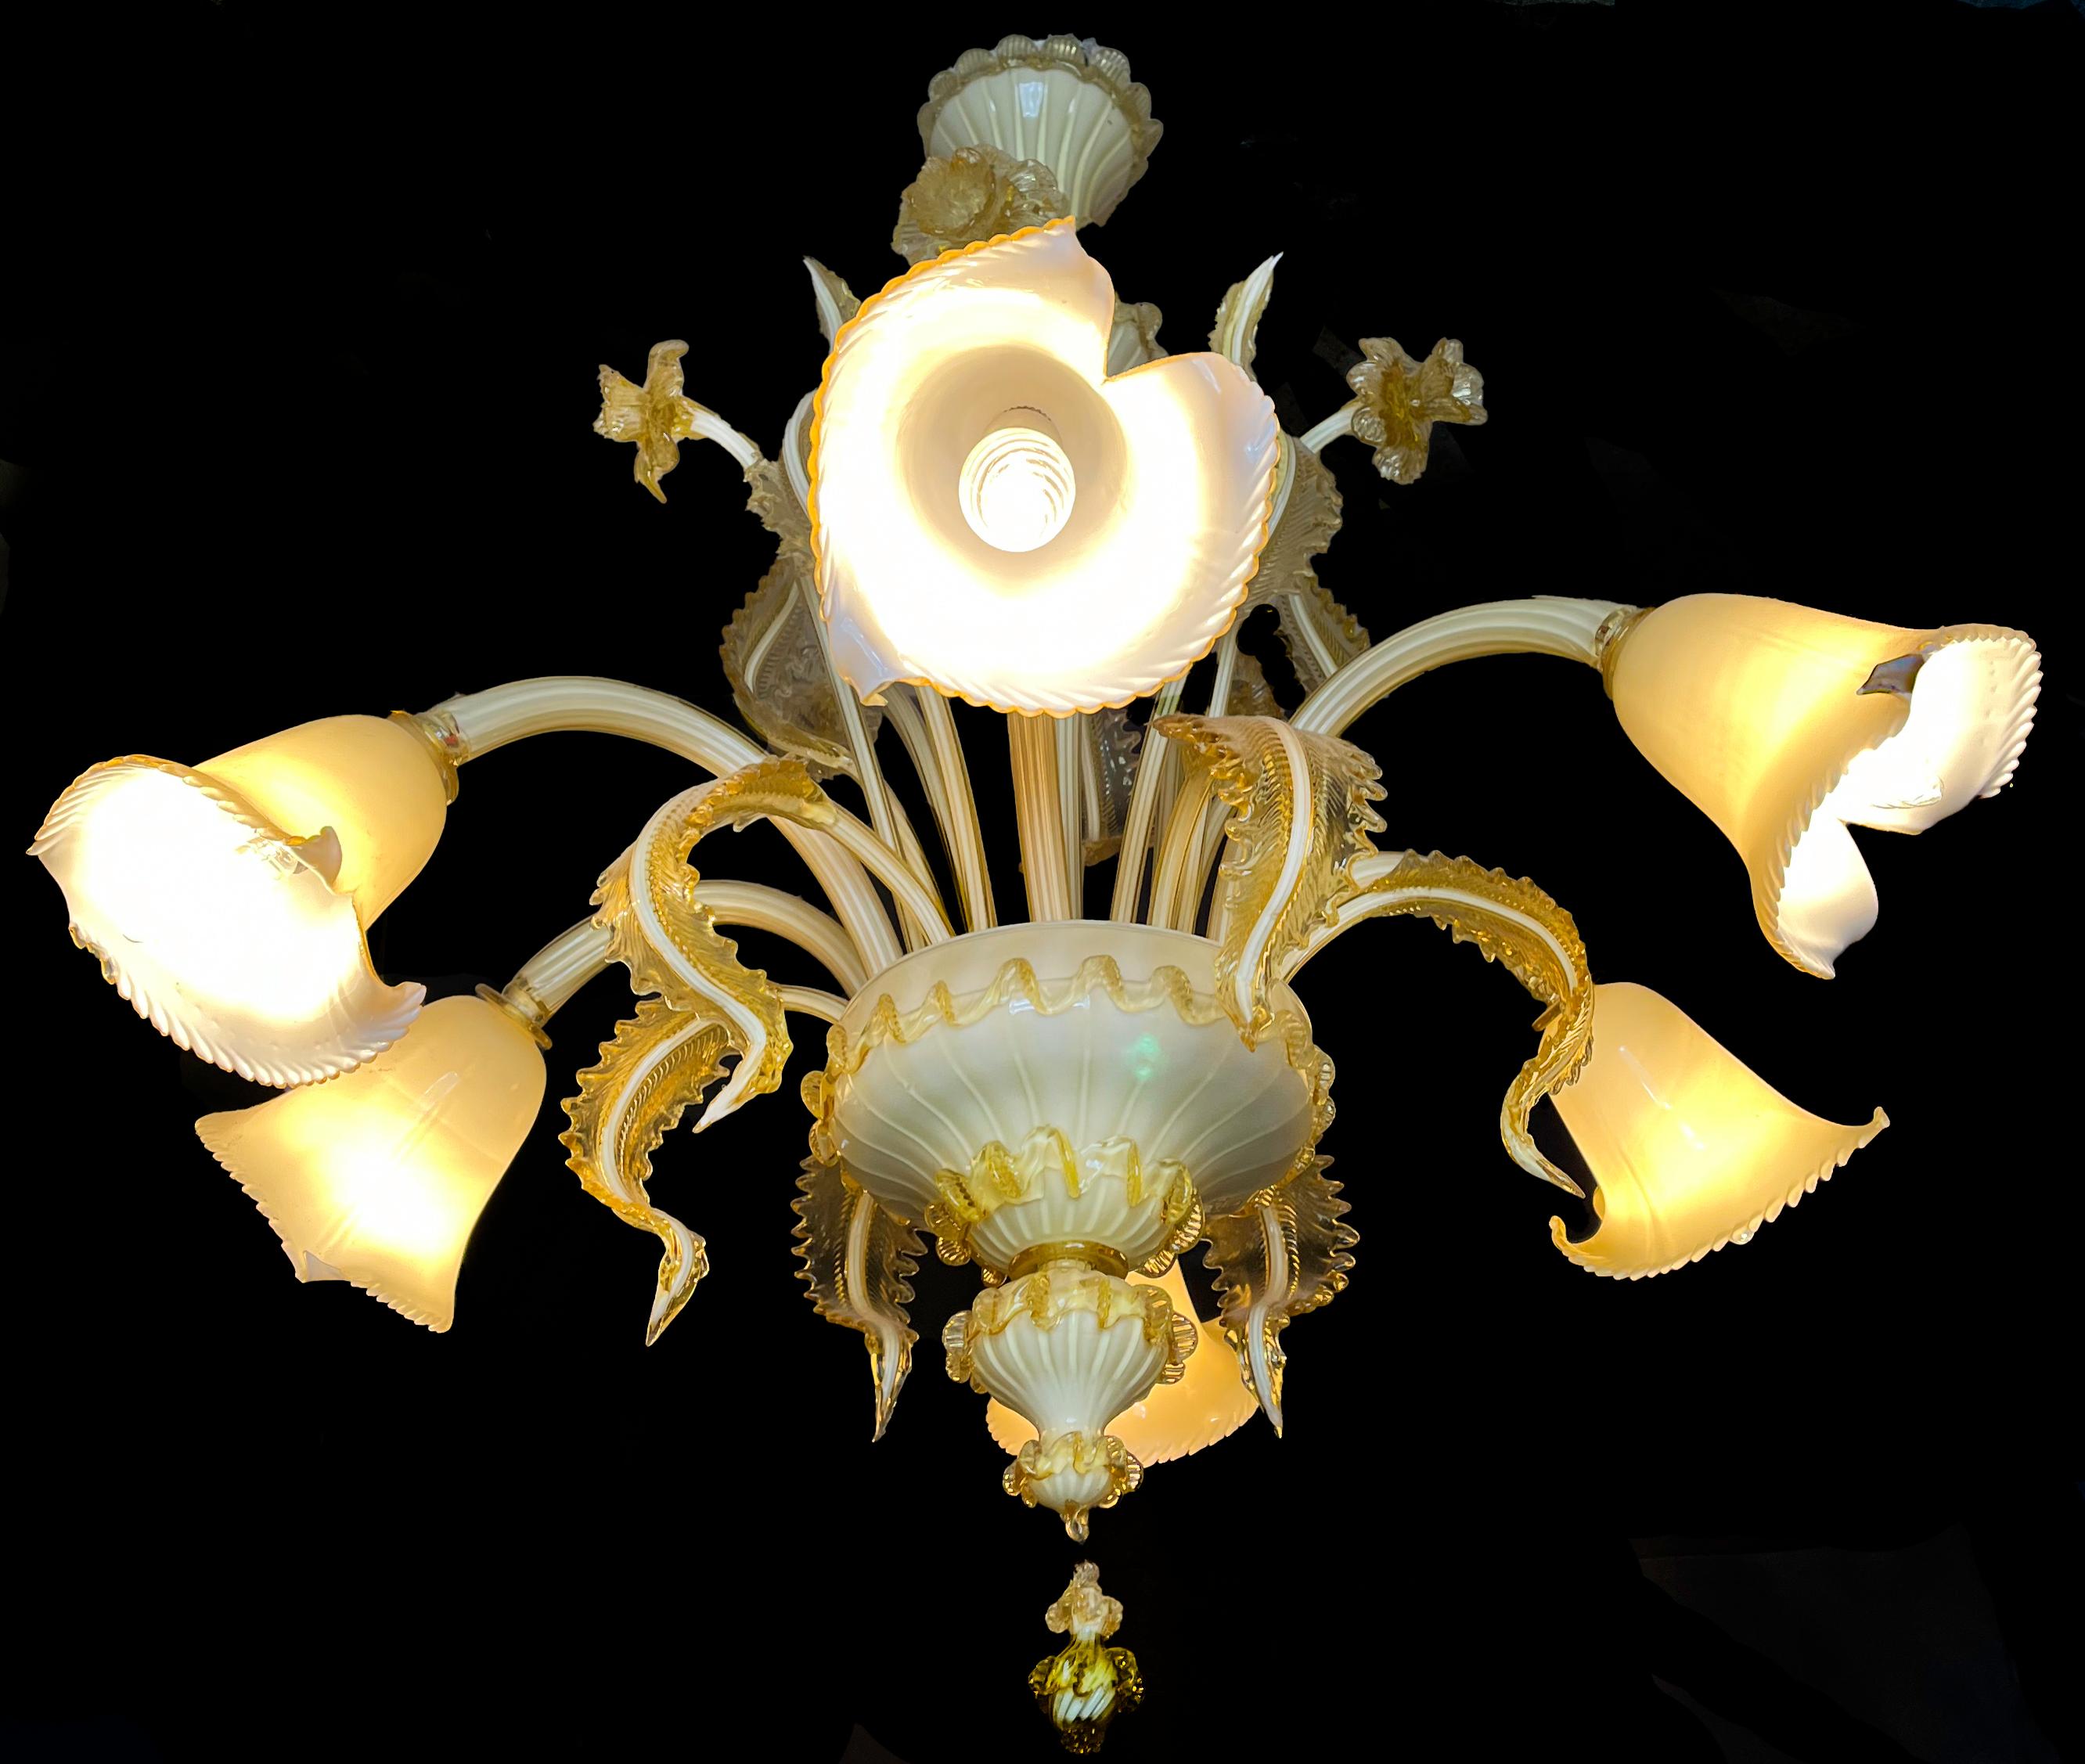 Merveilleux lustre de Murano de couleur opaline formé par 6 bras avec 6 points de lumière.
Le lustre est riche en décorations, composé de 10 belles feuilles d'or.
Mesures : La hauteur du point le plus haut est de 120 cm tandis que le diamètre est de